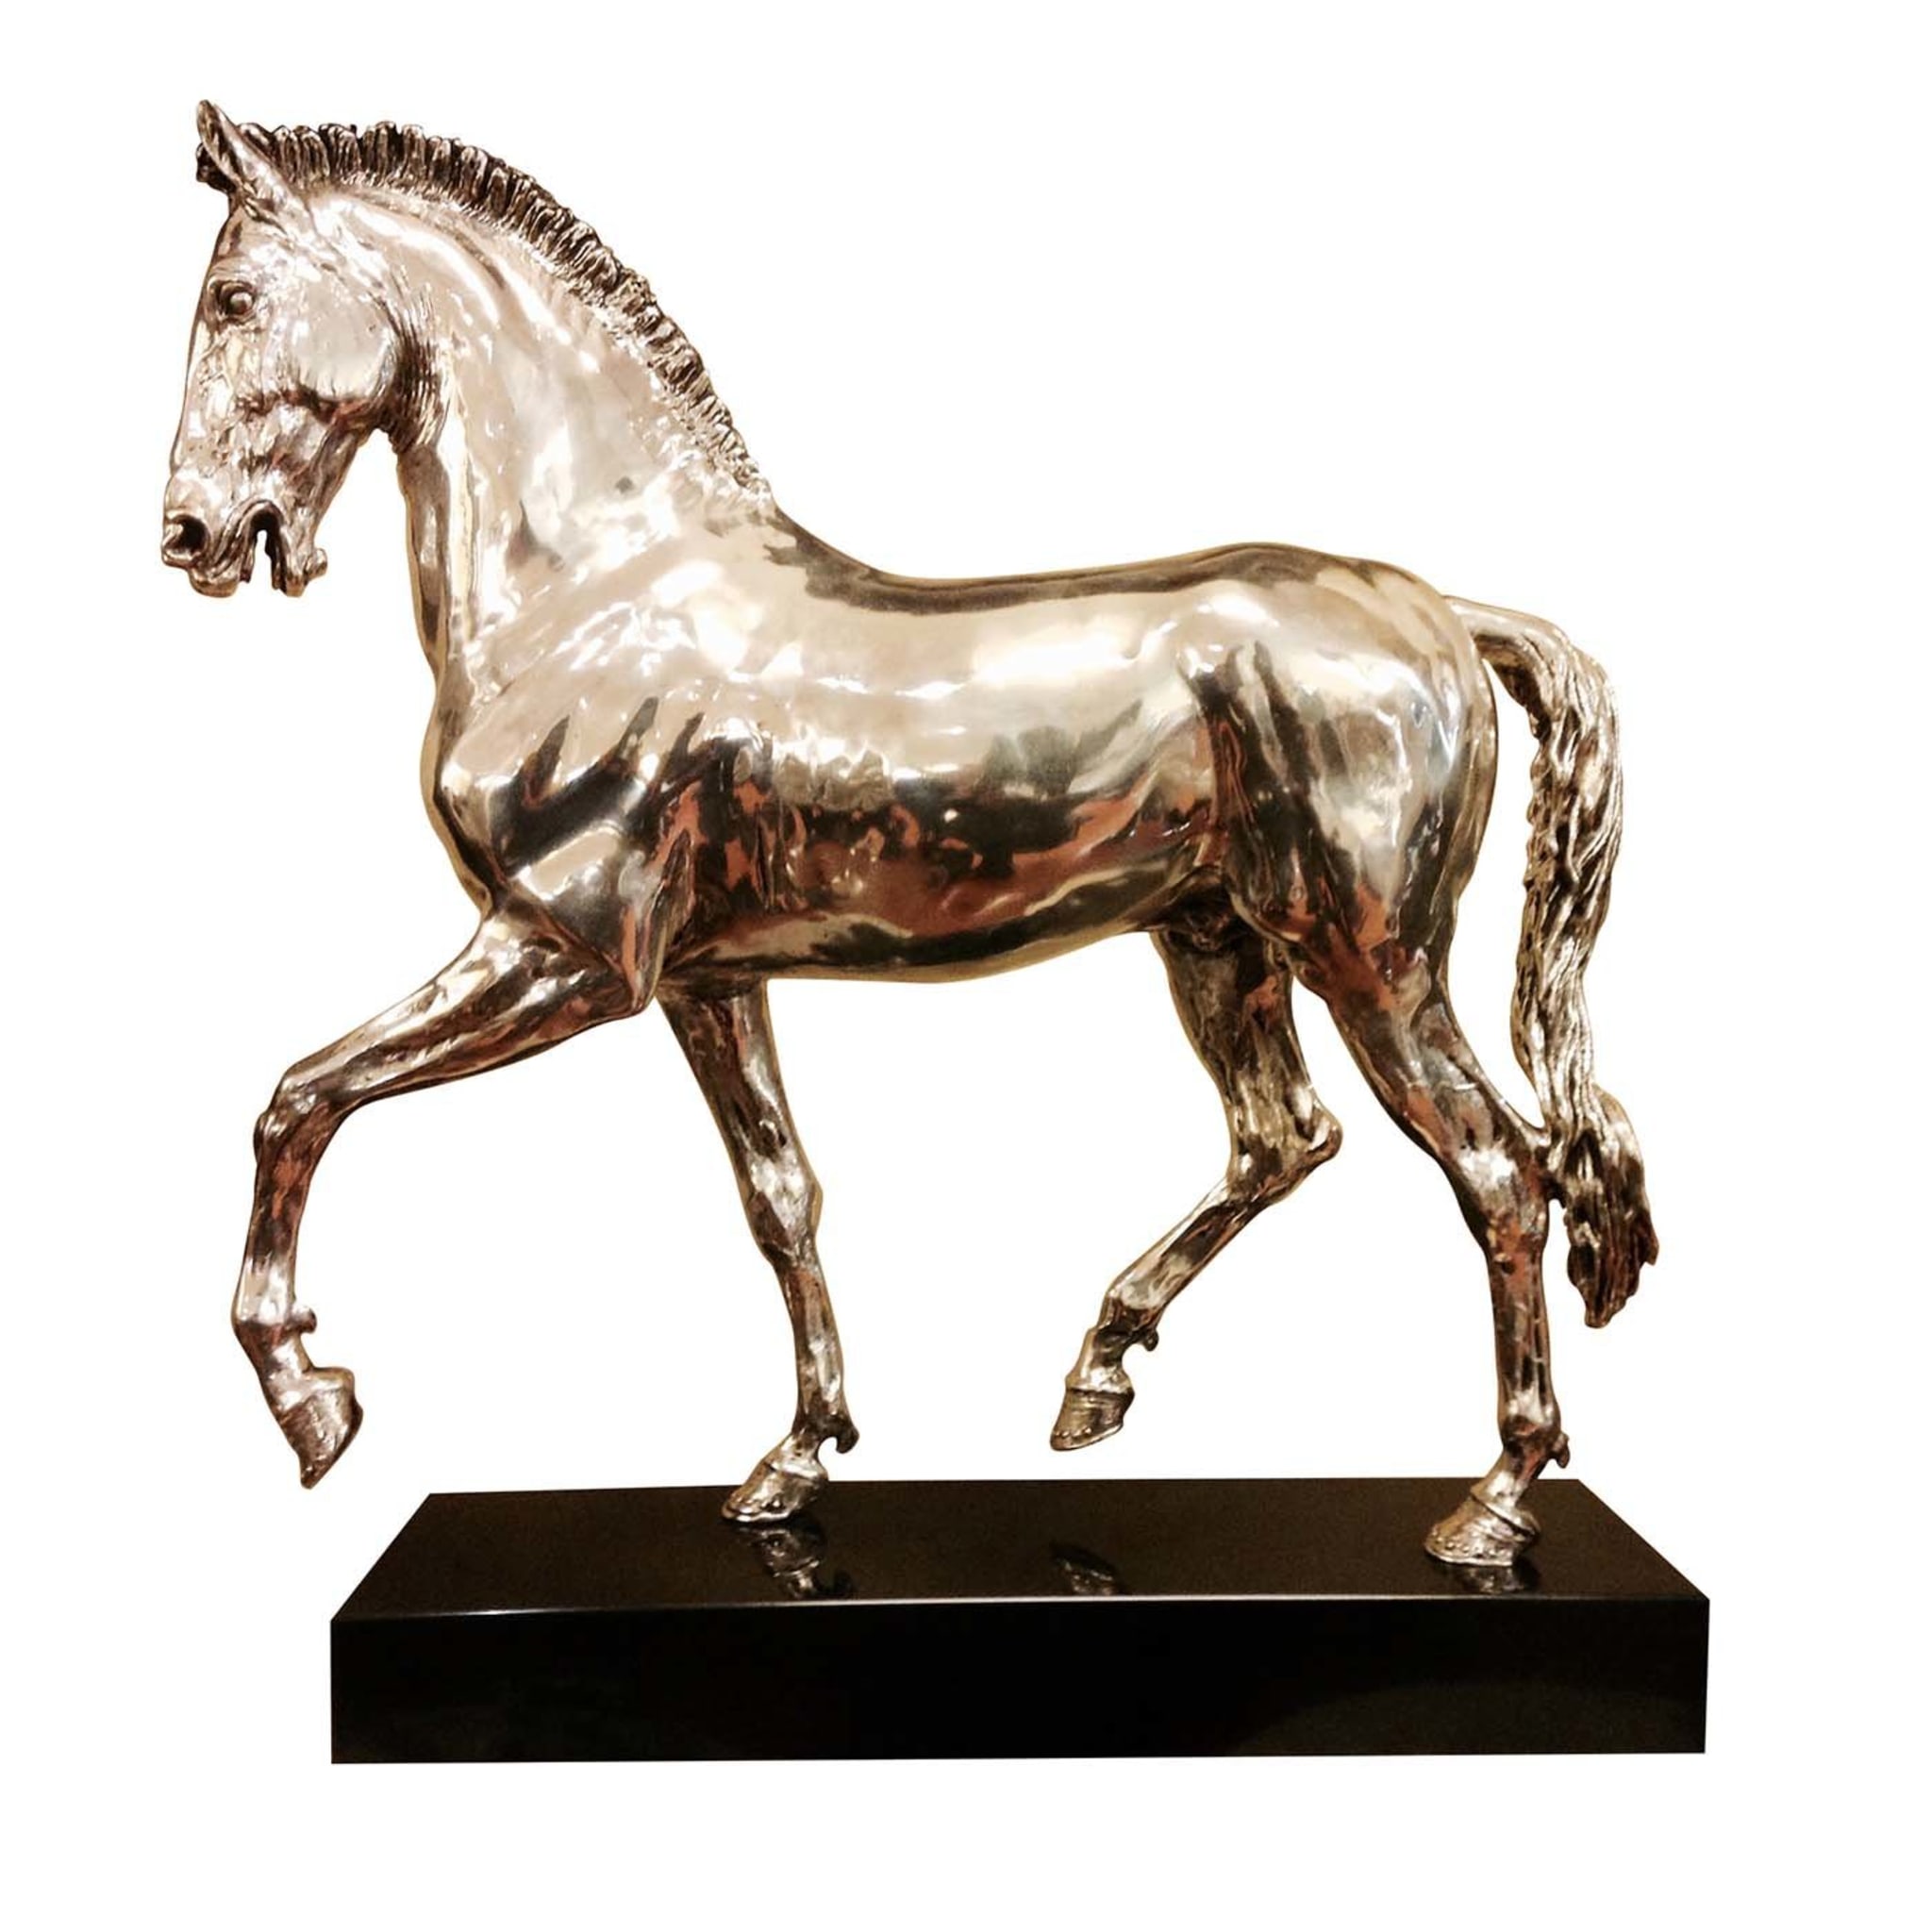 Statuetta d'argento del cavallo arabo - Vista principale